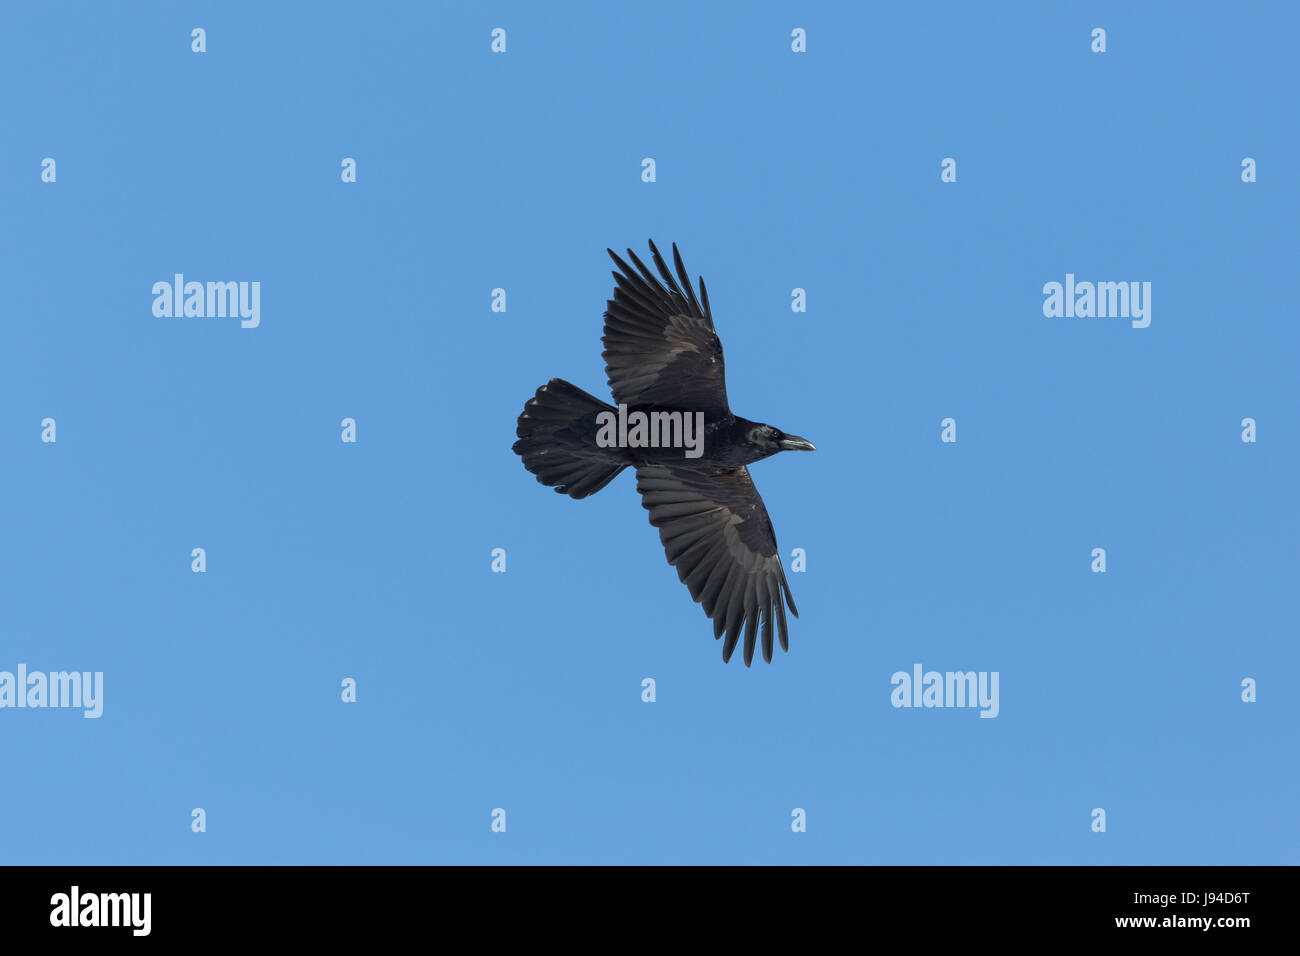 Ritratto del nord del corvo imperiale (Corvus corax) in volo nel cielo blu Foto Stock